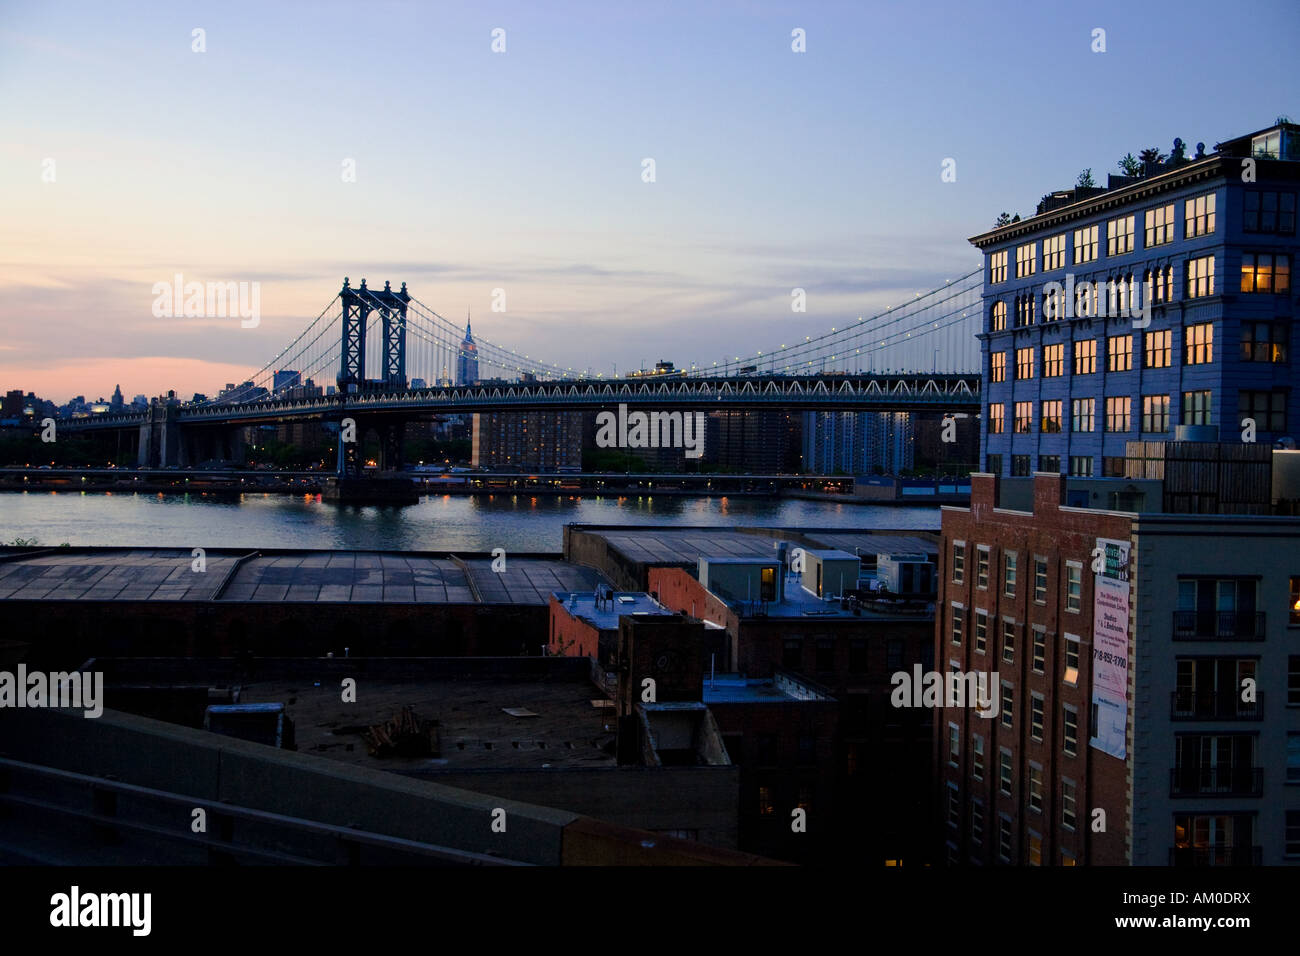 Dumbo, Manhattan Bridge, Brooklyn, New York City, USA Stock Photo